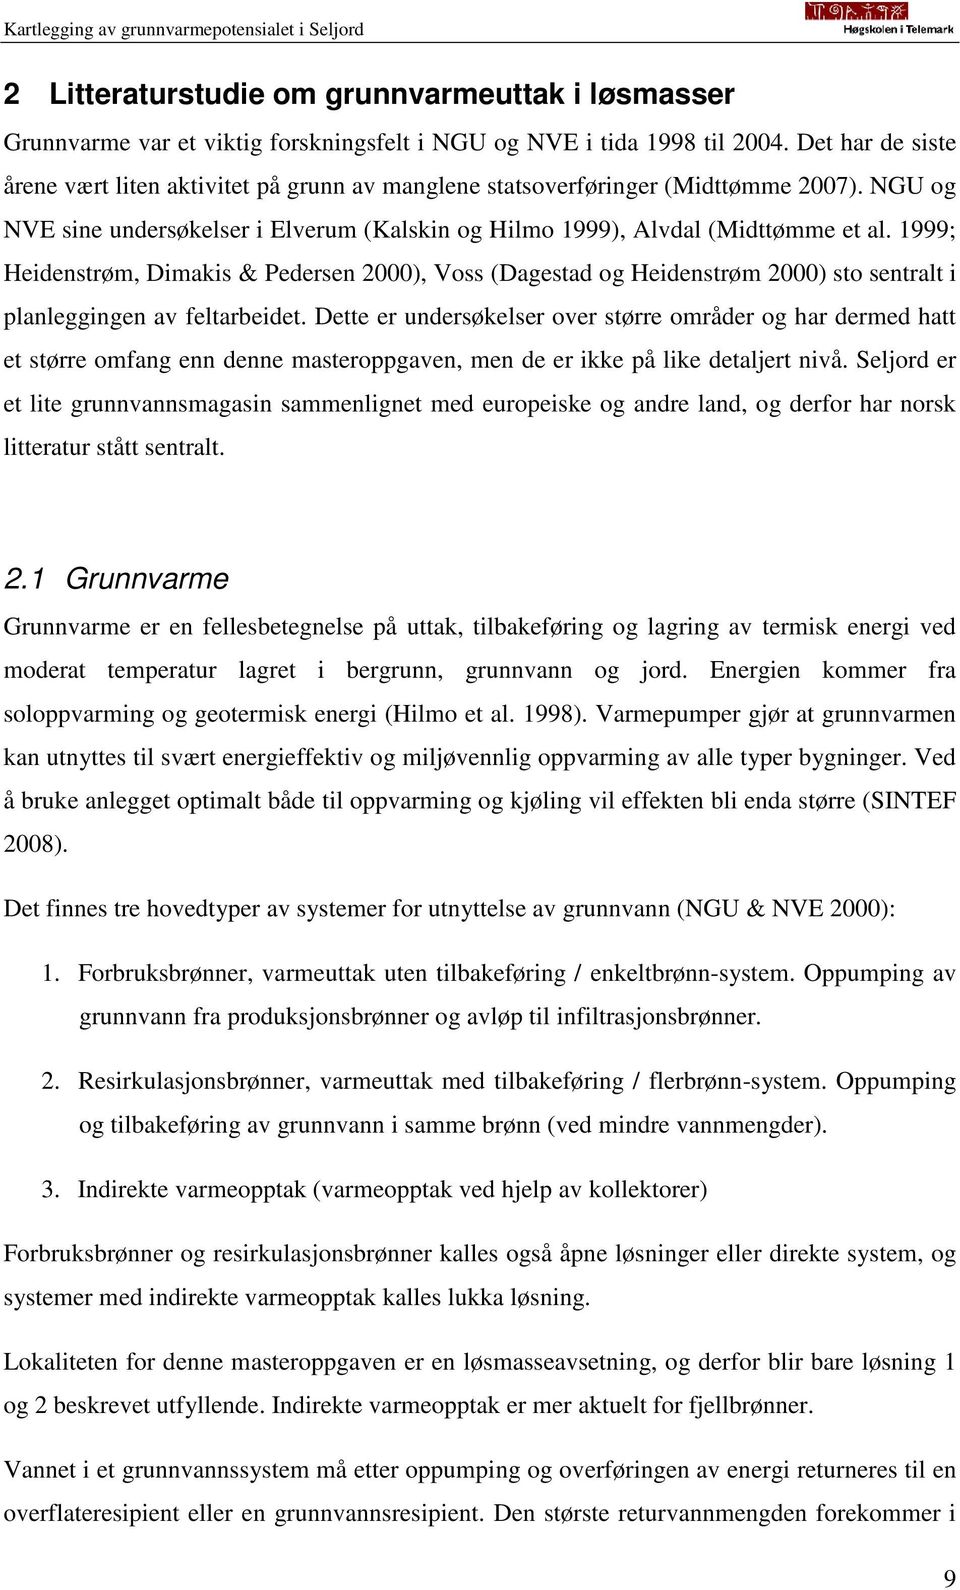 1999; Heidenstrøm, Dimakis & Pedersen 2000), Voss (Dagestad og Heidenstrøm 2000) sto sentralt i planleggingen av feltarbeidet.